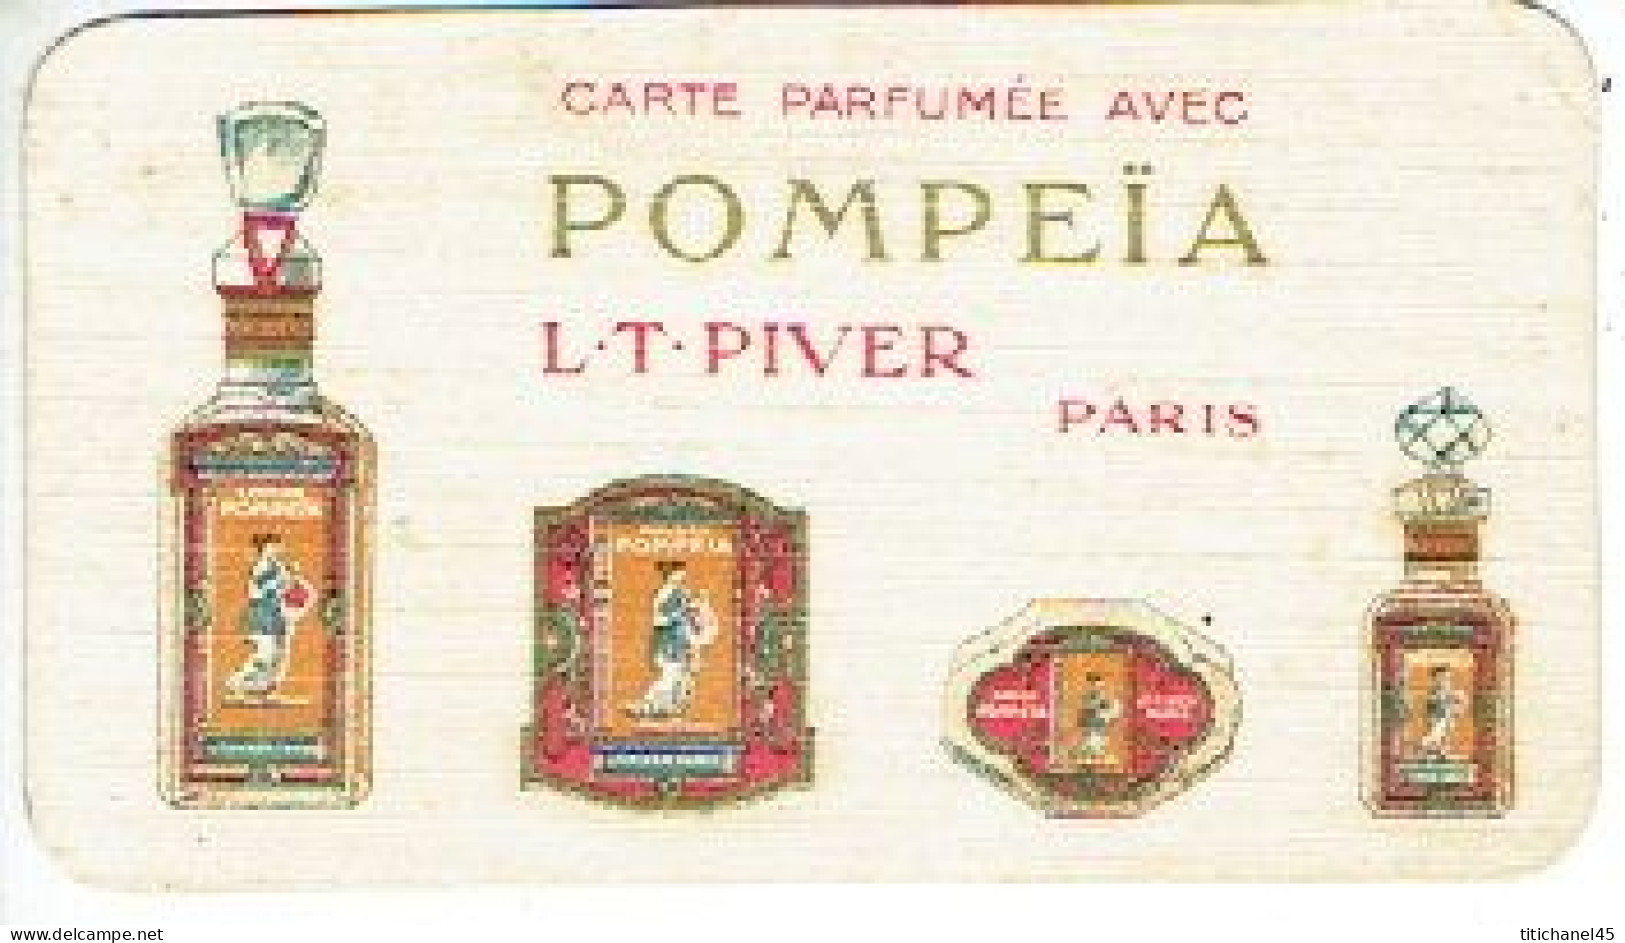 Carte Parfum POMPEÏA De L.T. PIVER - Carte Offerte Par S. LAITEM-DESSY Imprimerie à GOSSELIES - Vintage (until 1960)